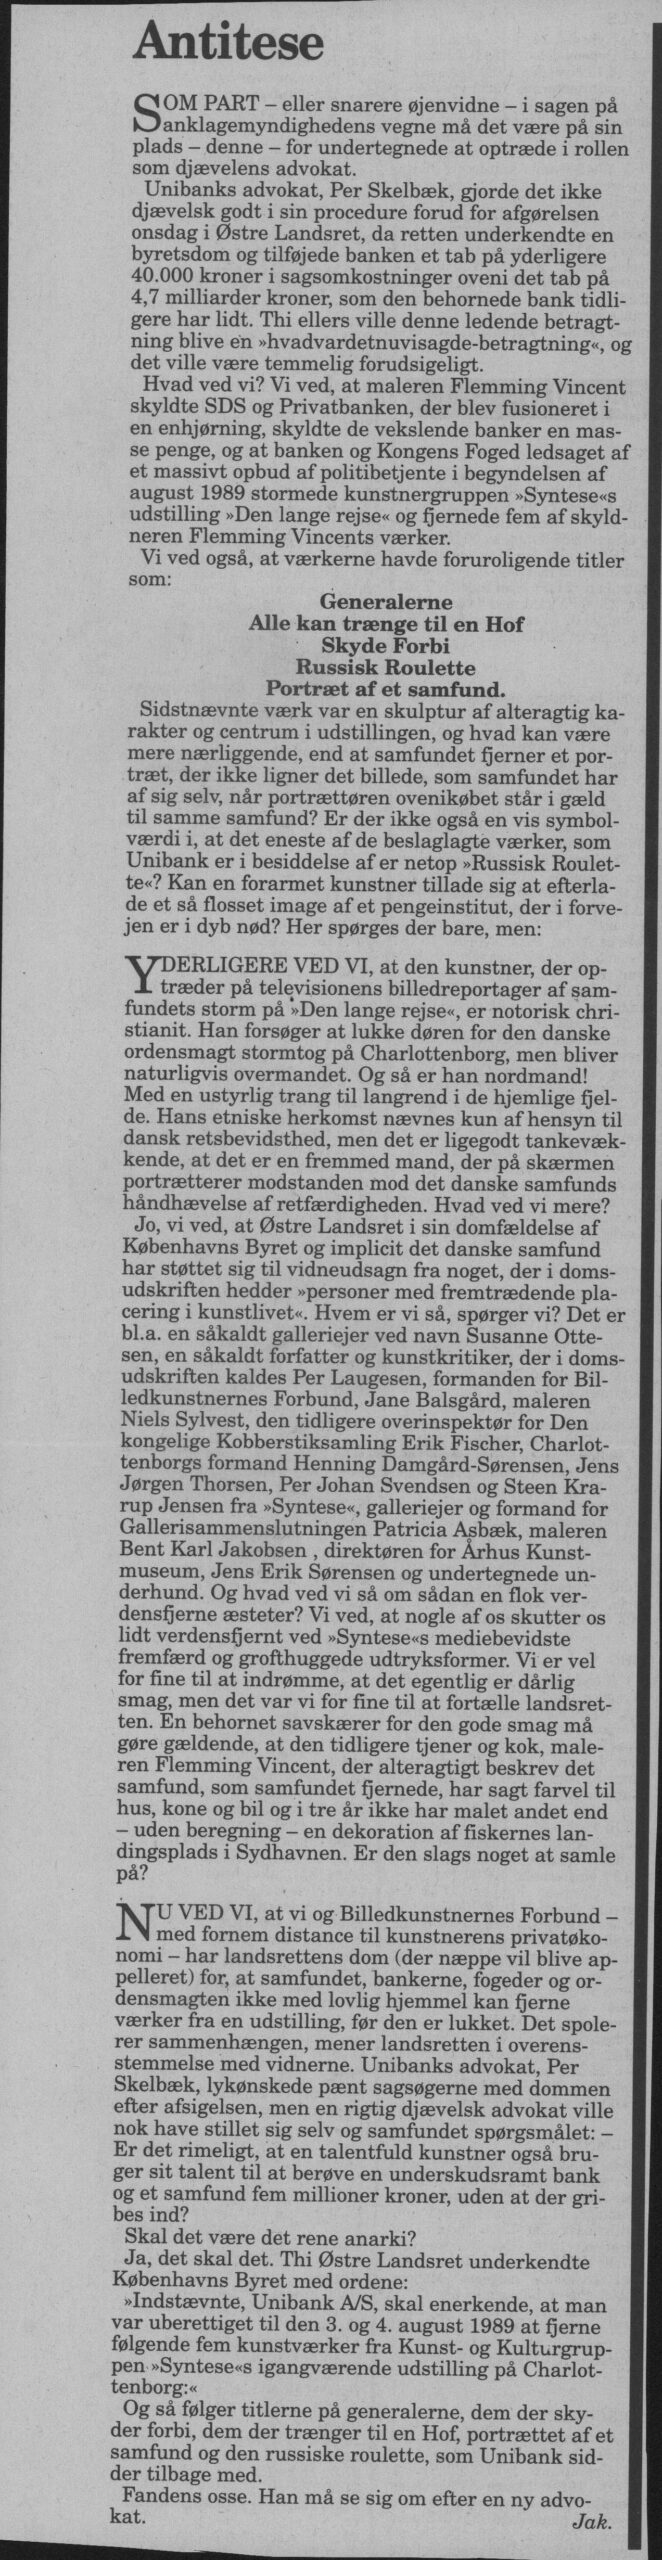 Antitese. Omtale (Den lange rejse. Charlottenborg, København 1989). Jak. Information.